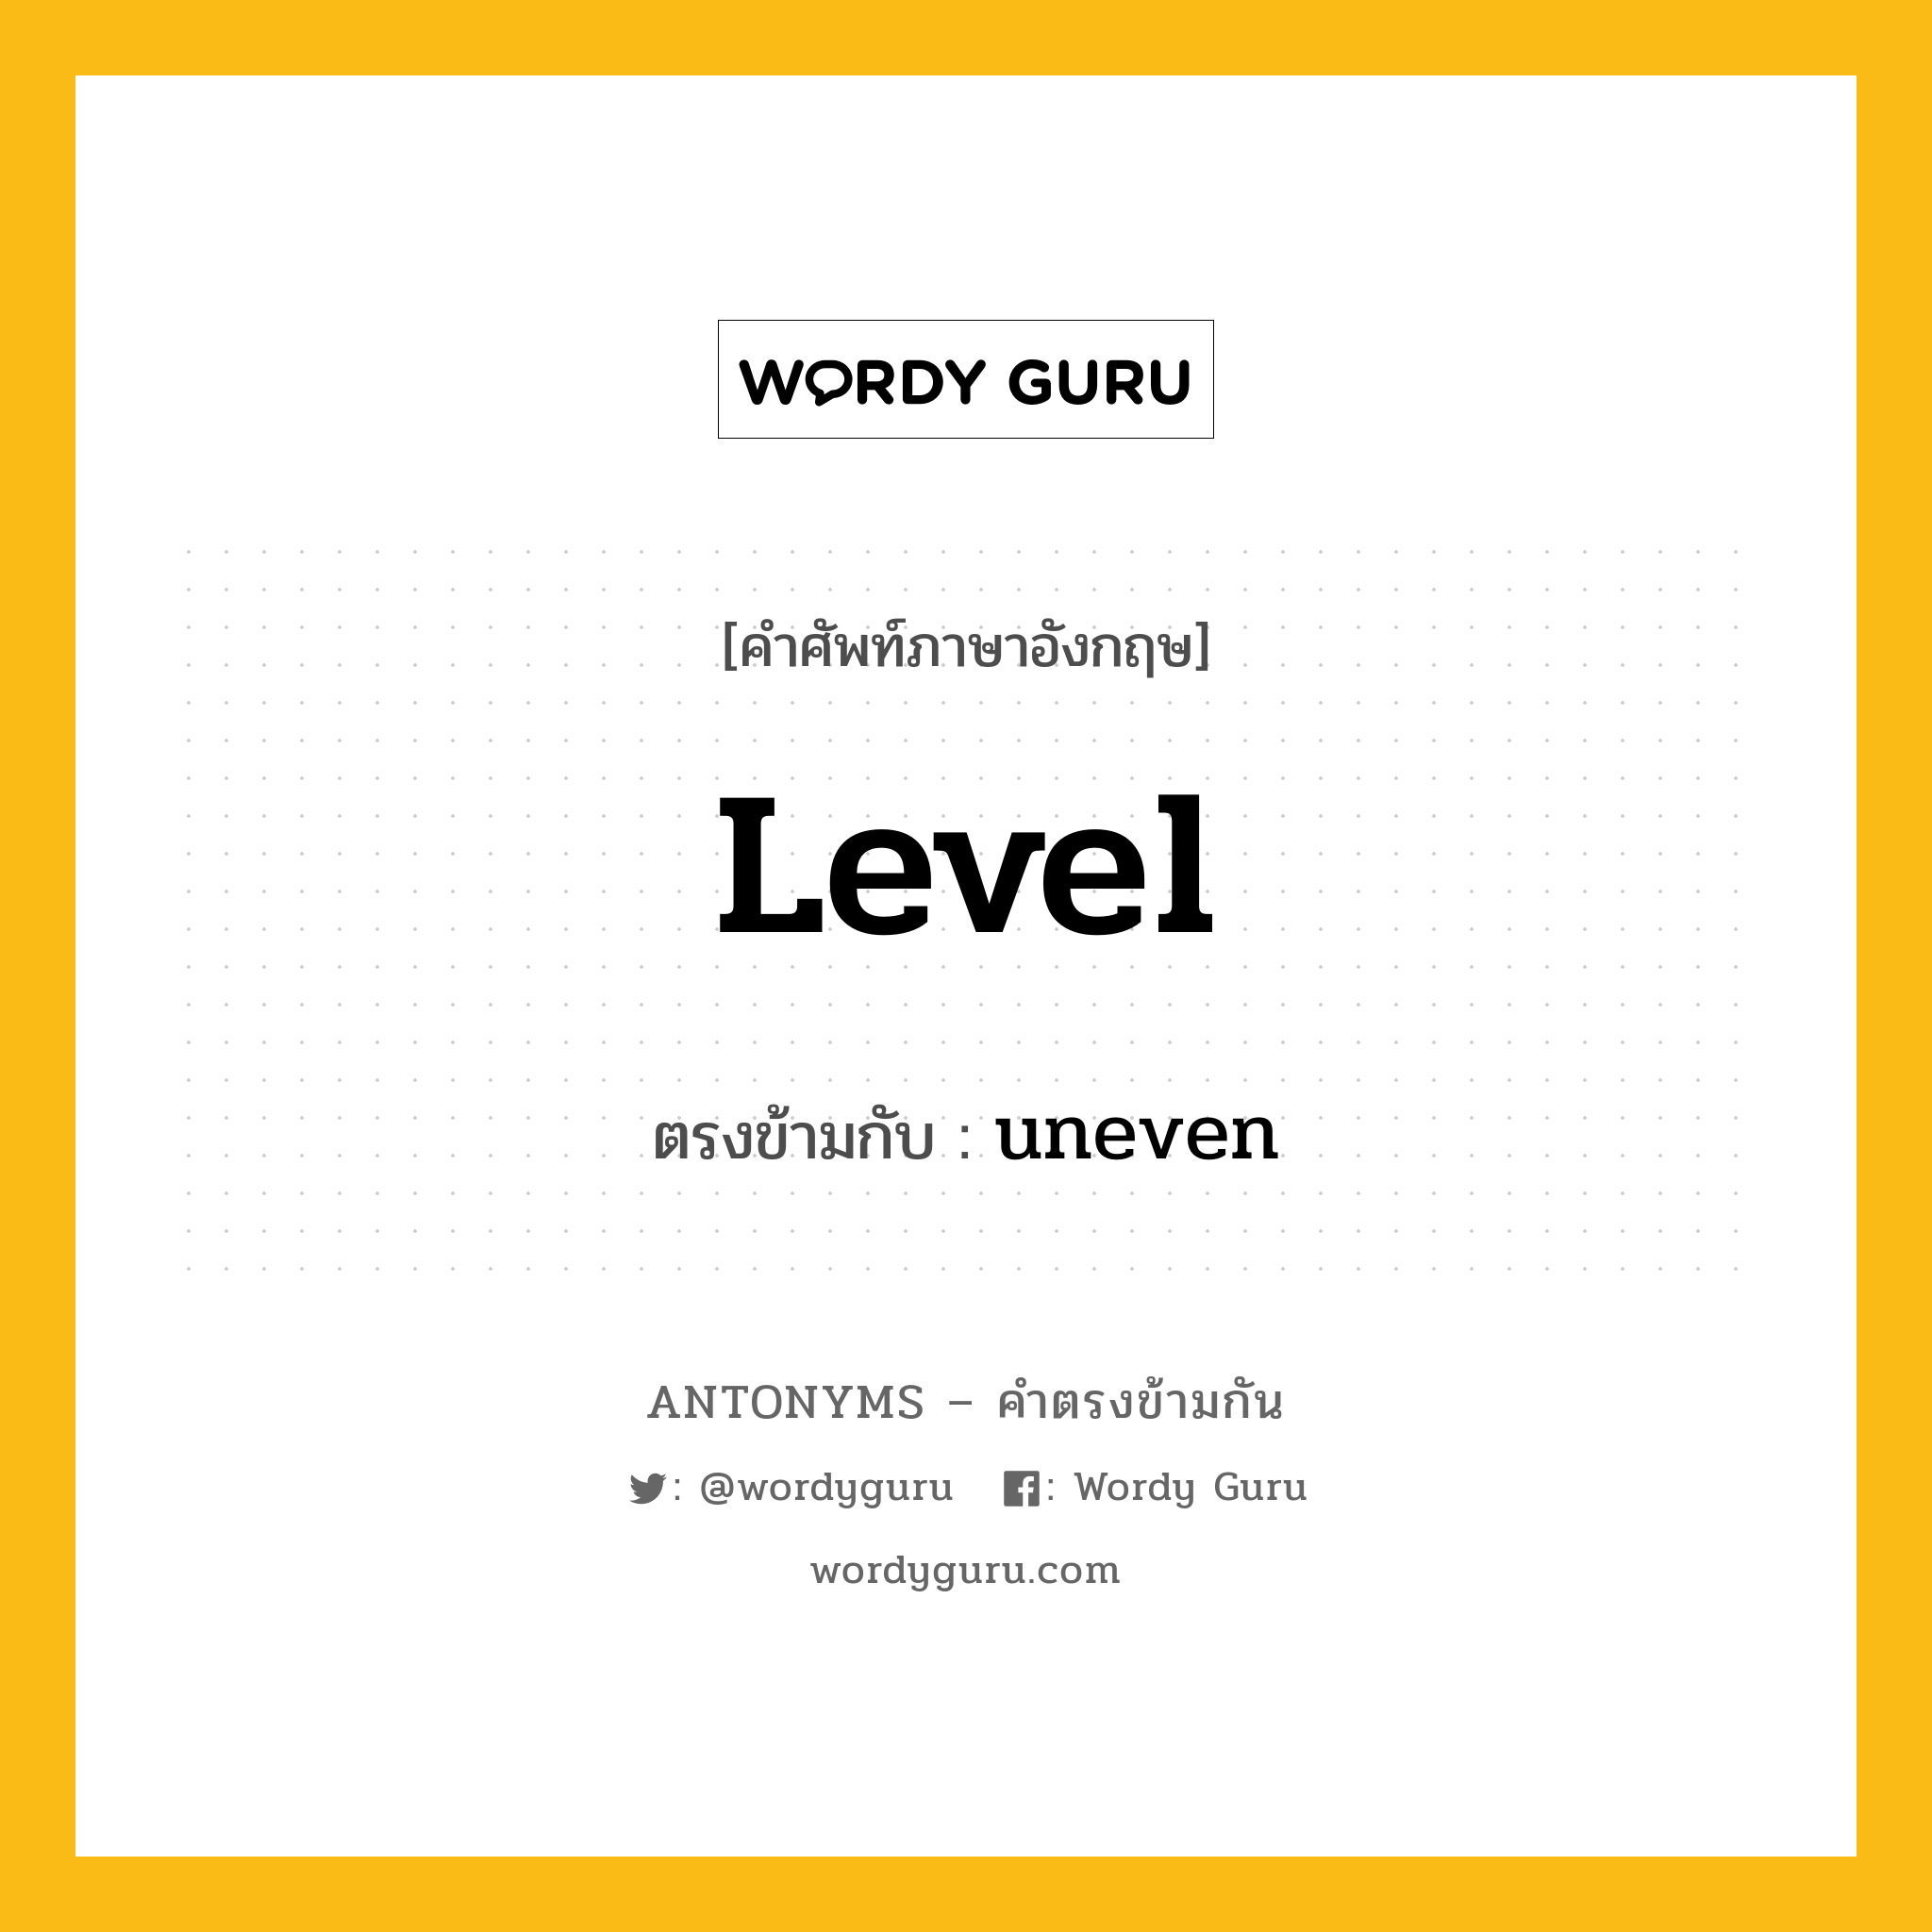 level เป็นคำตรงข้ามกับคำไหนบ้าง?, คำศัพท์ภาษาอังกฤษ level ตรงข้ามกับ uneven หมวด uneven